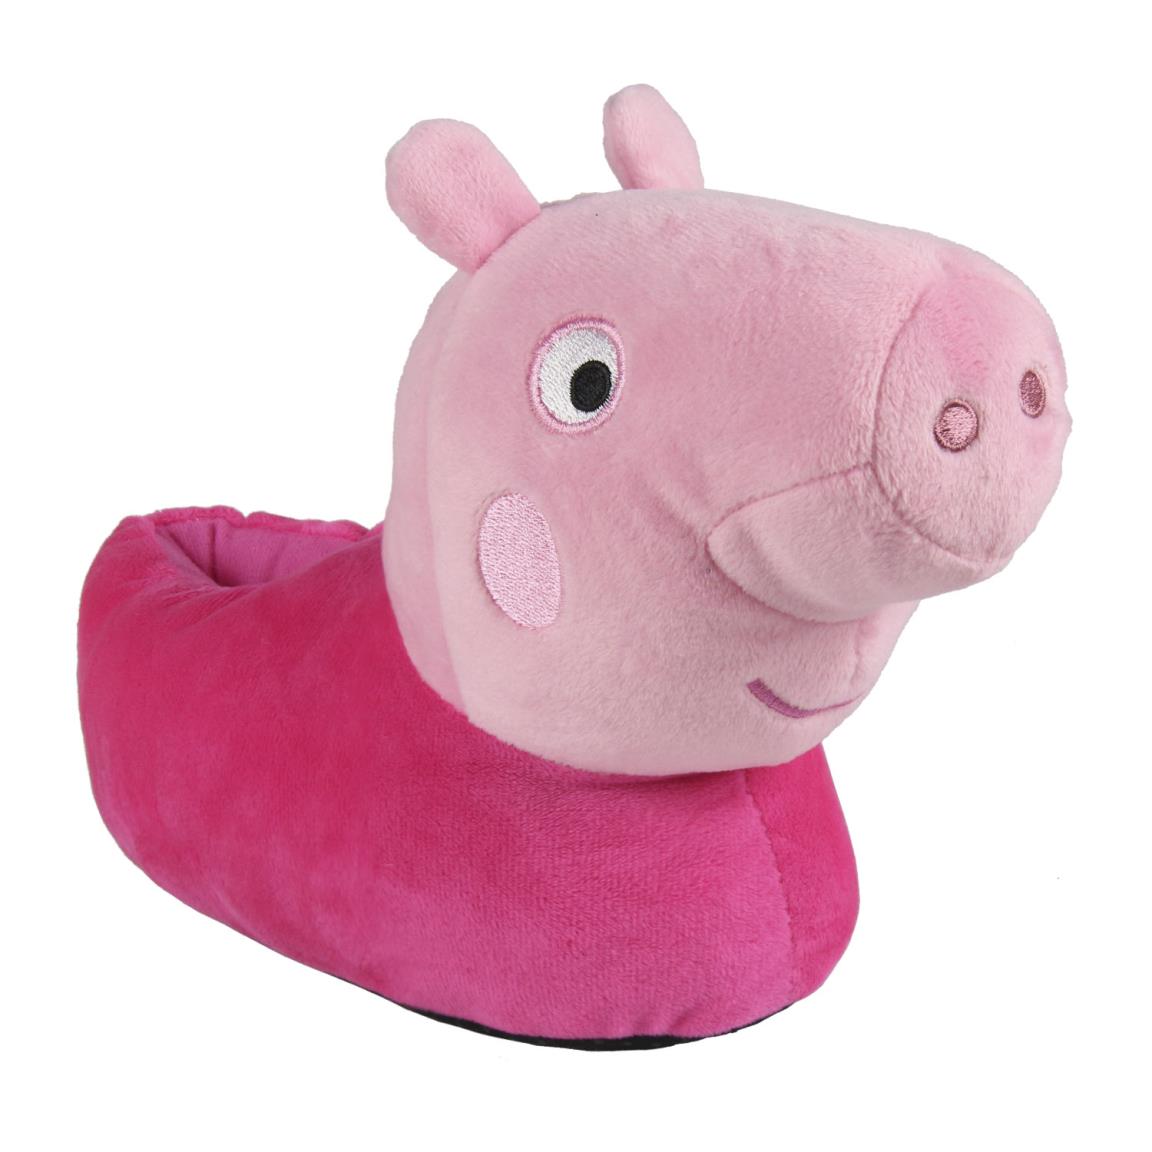 Kinder Hausschuhe Peppa Pig 2300004206